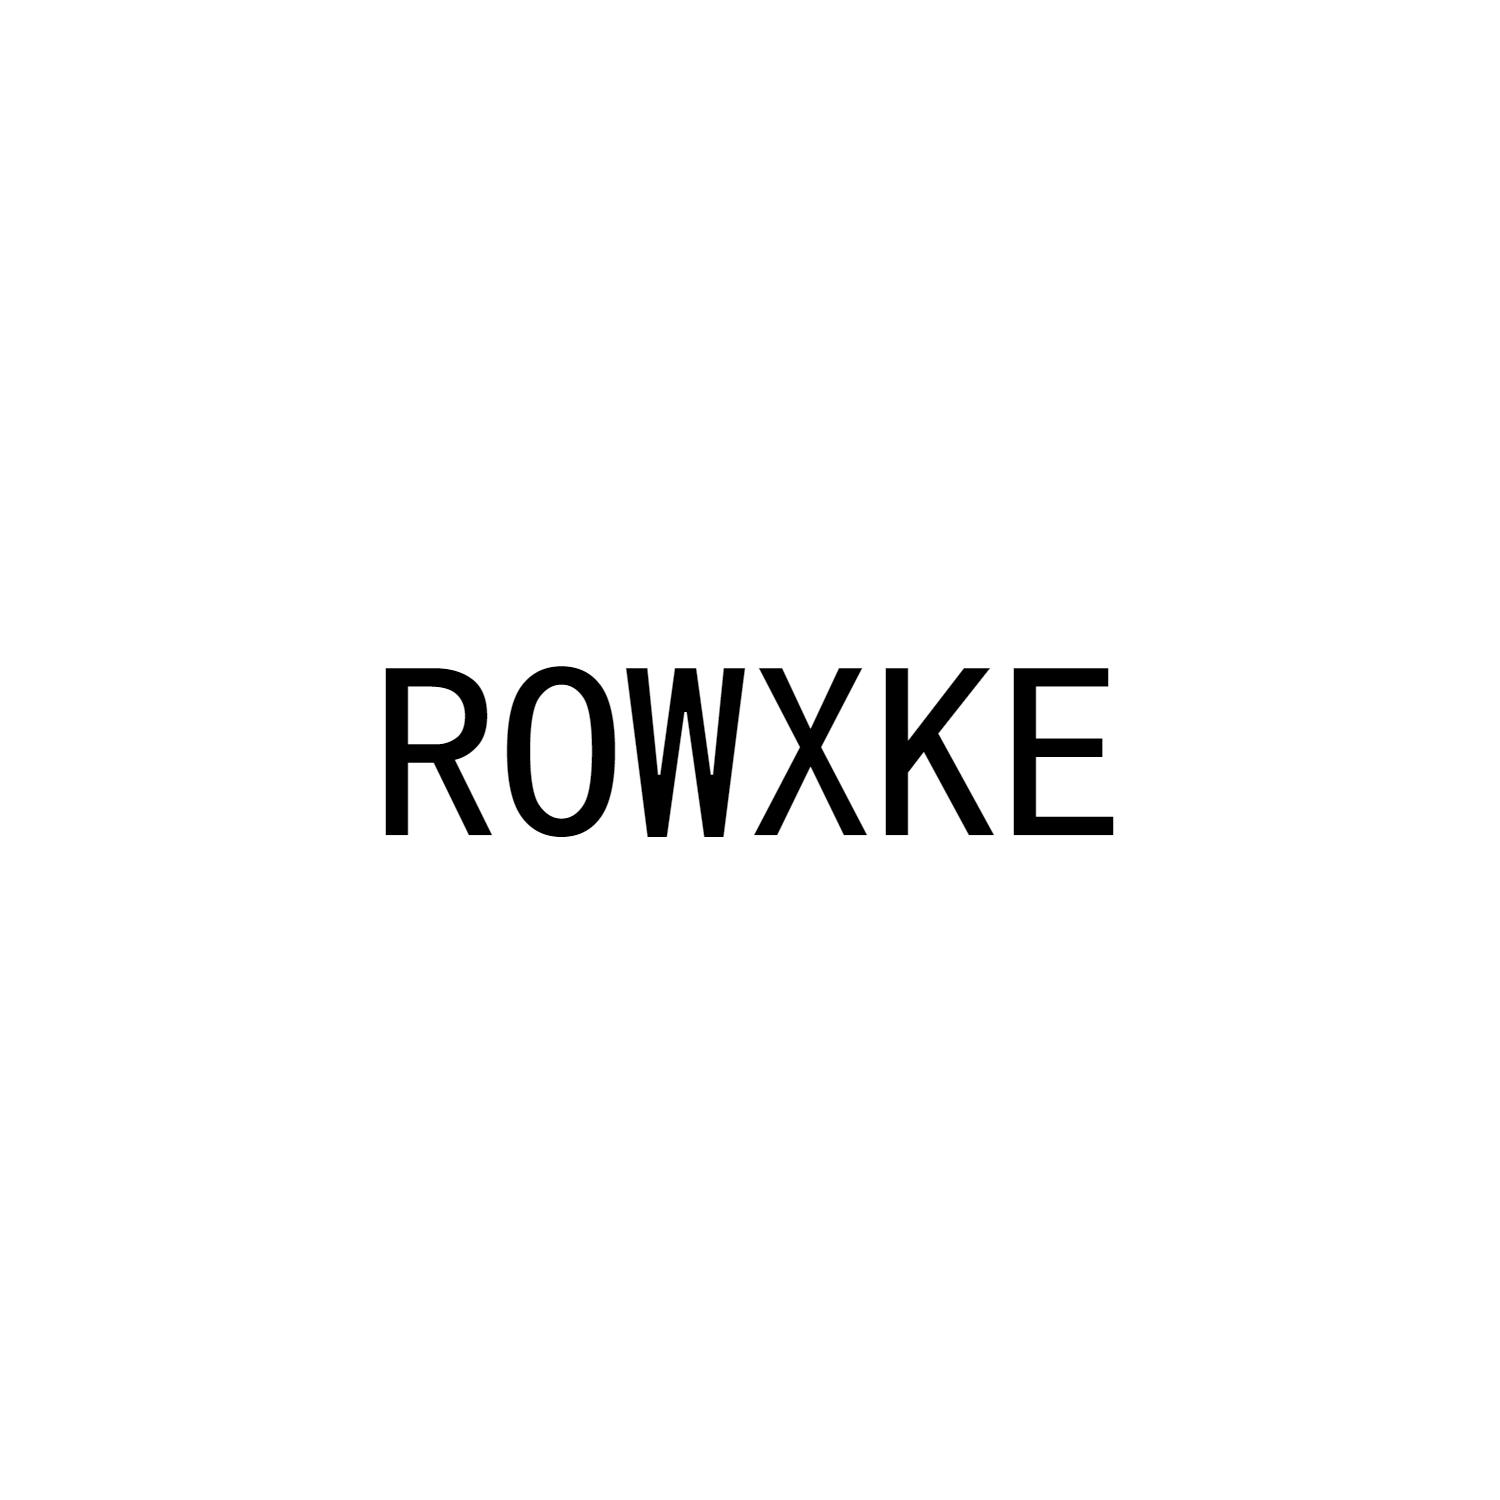 ROWXKE